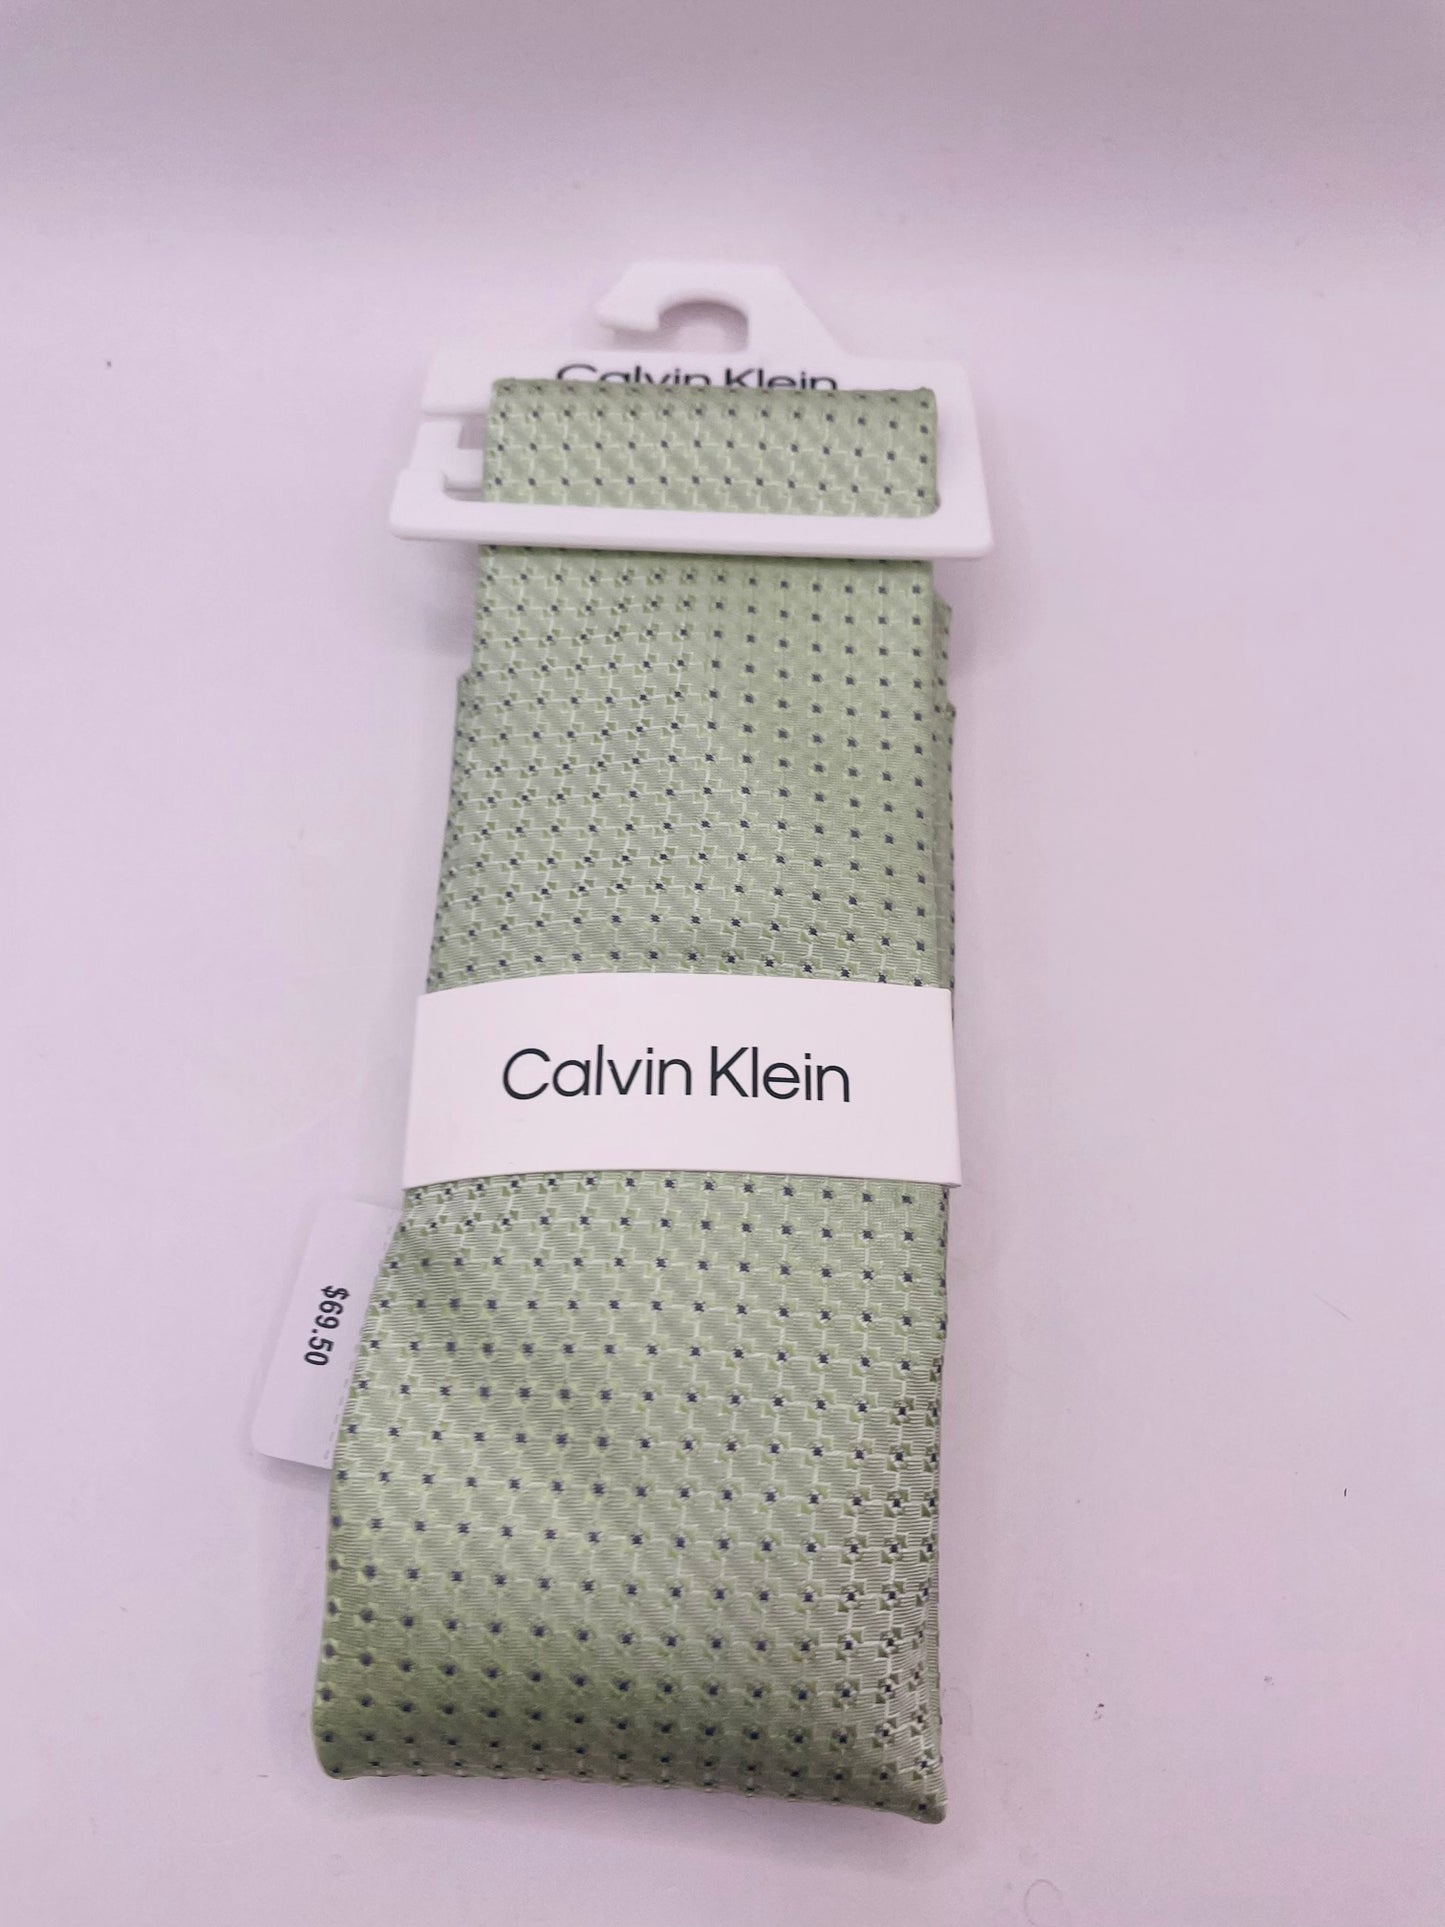 Calvin Klein tie